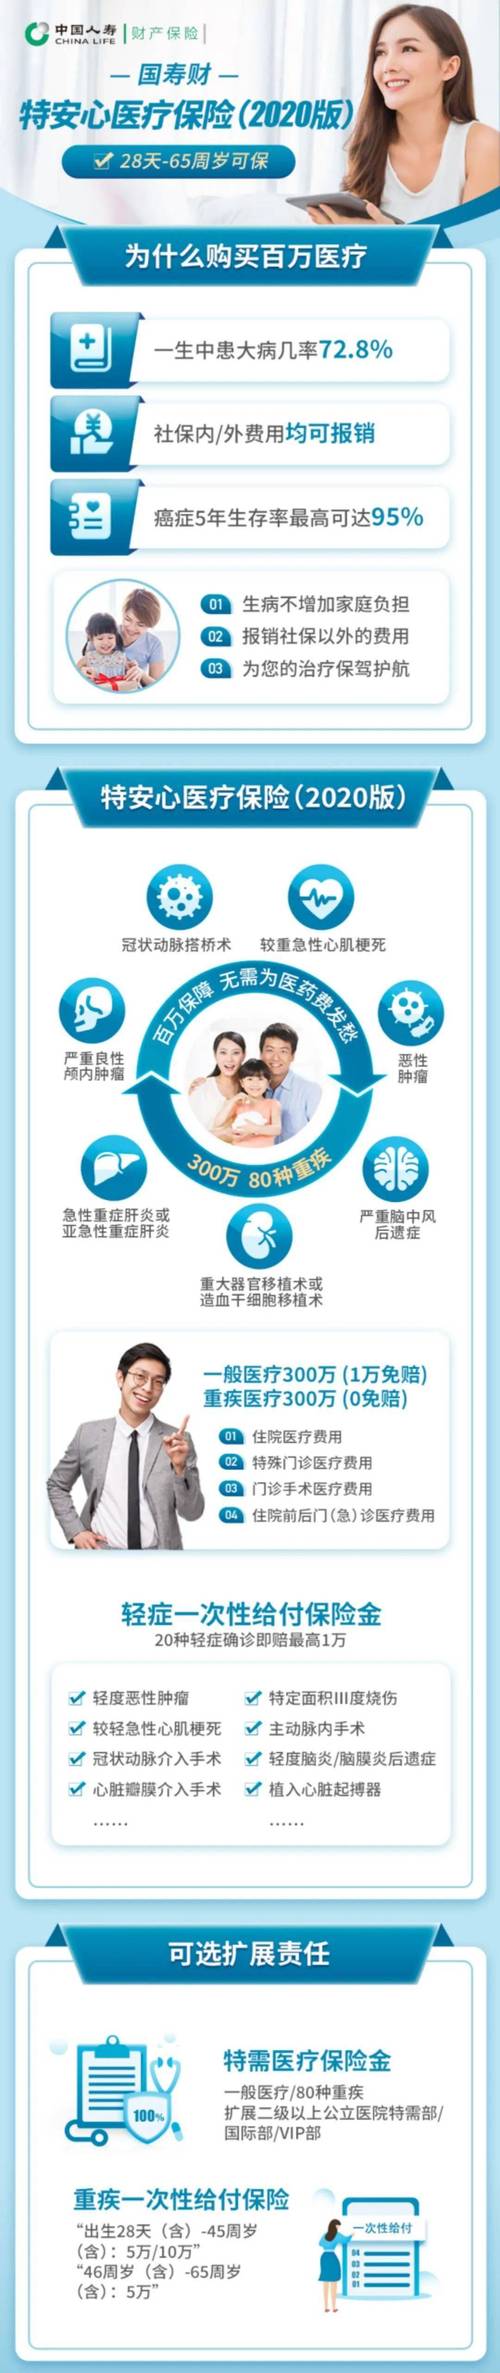 中国人寿特安心百万医疗保险2020版